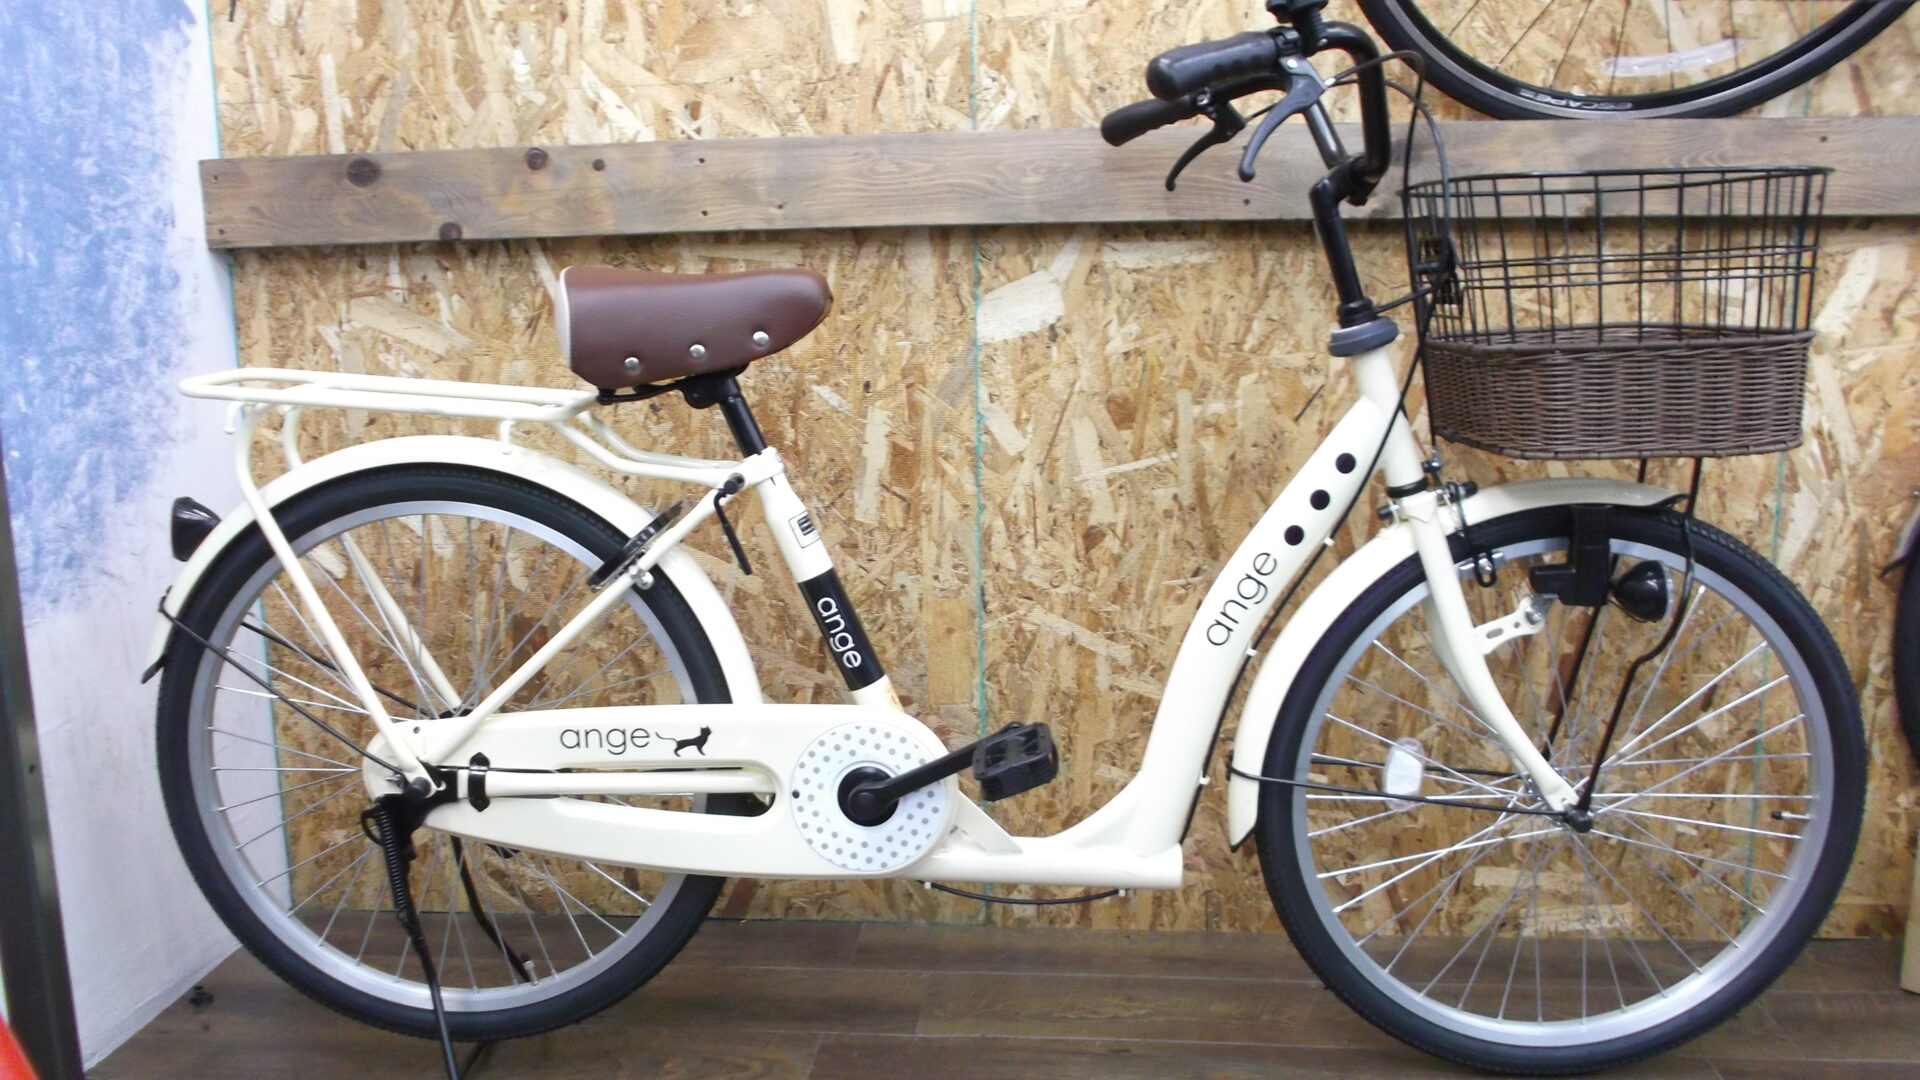 新車 ファミリー車 | 京都の中古自転車・新車販売 サイクルショップ 